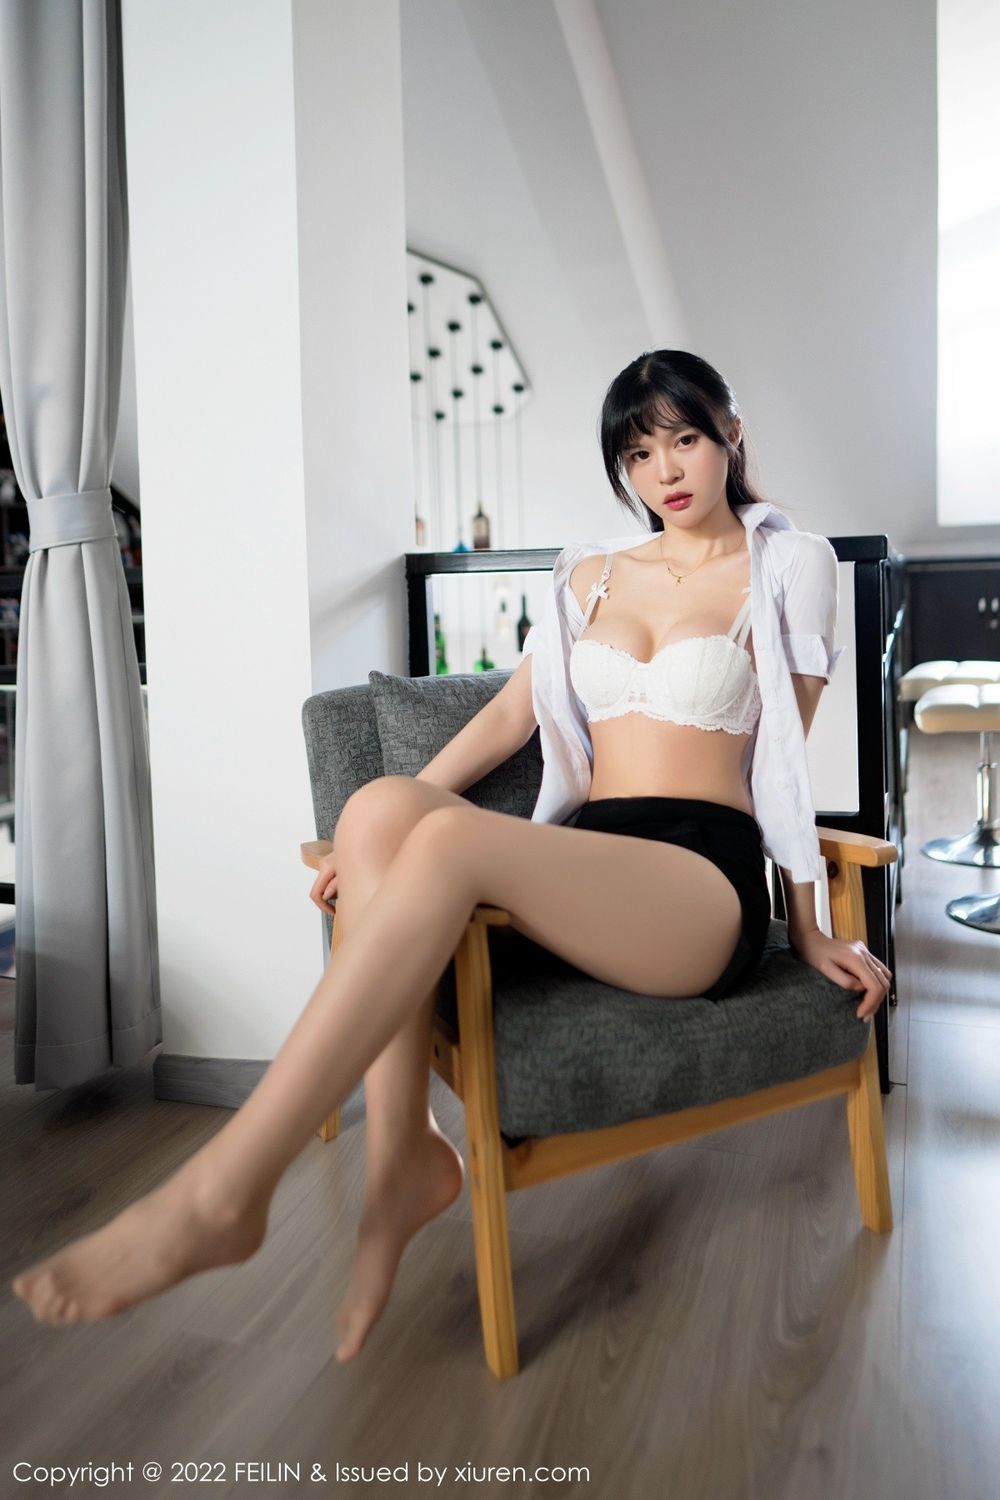 美女模特桃香子白T搭配黑色短裙女仆装扮性感写真